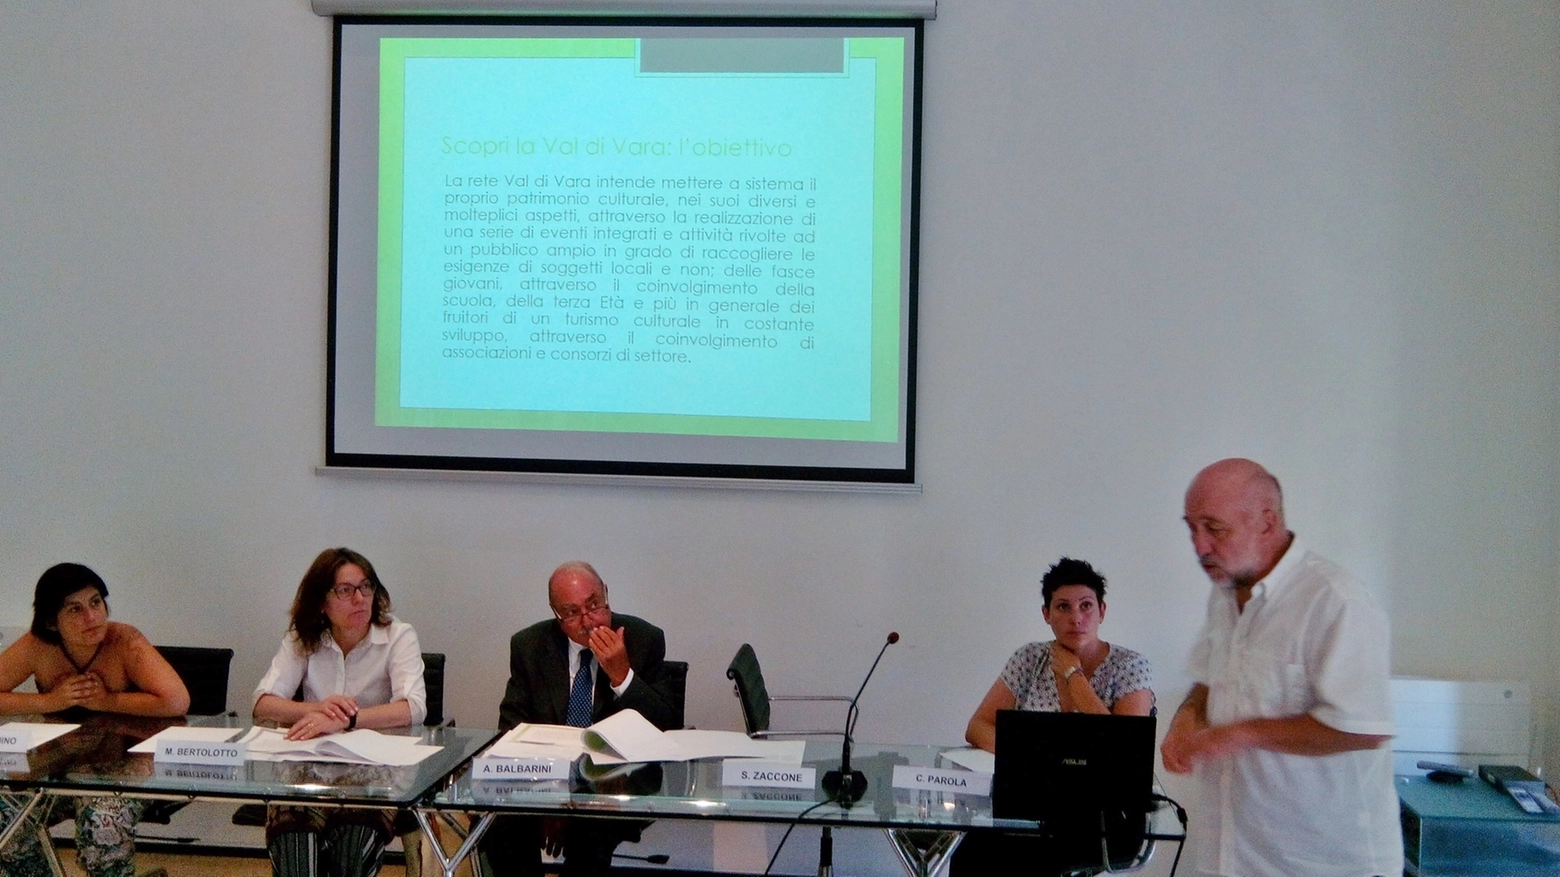 La conferenza di presentazione con Lavagnino, Bertolotto, Balbarini, Parola e Zaccone